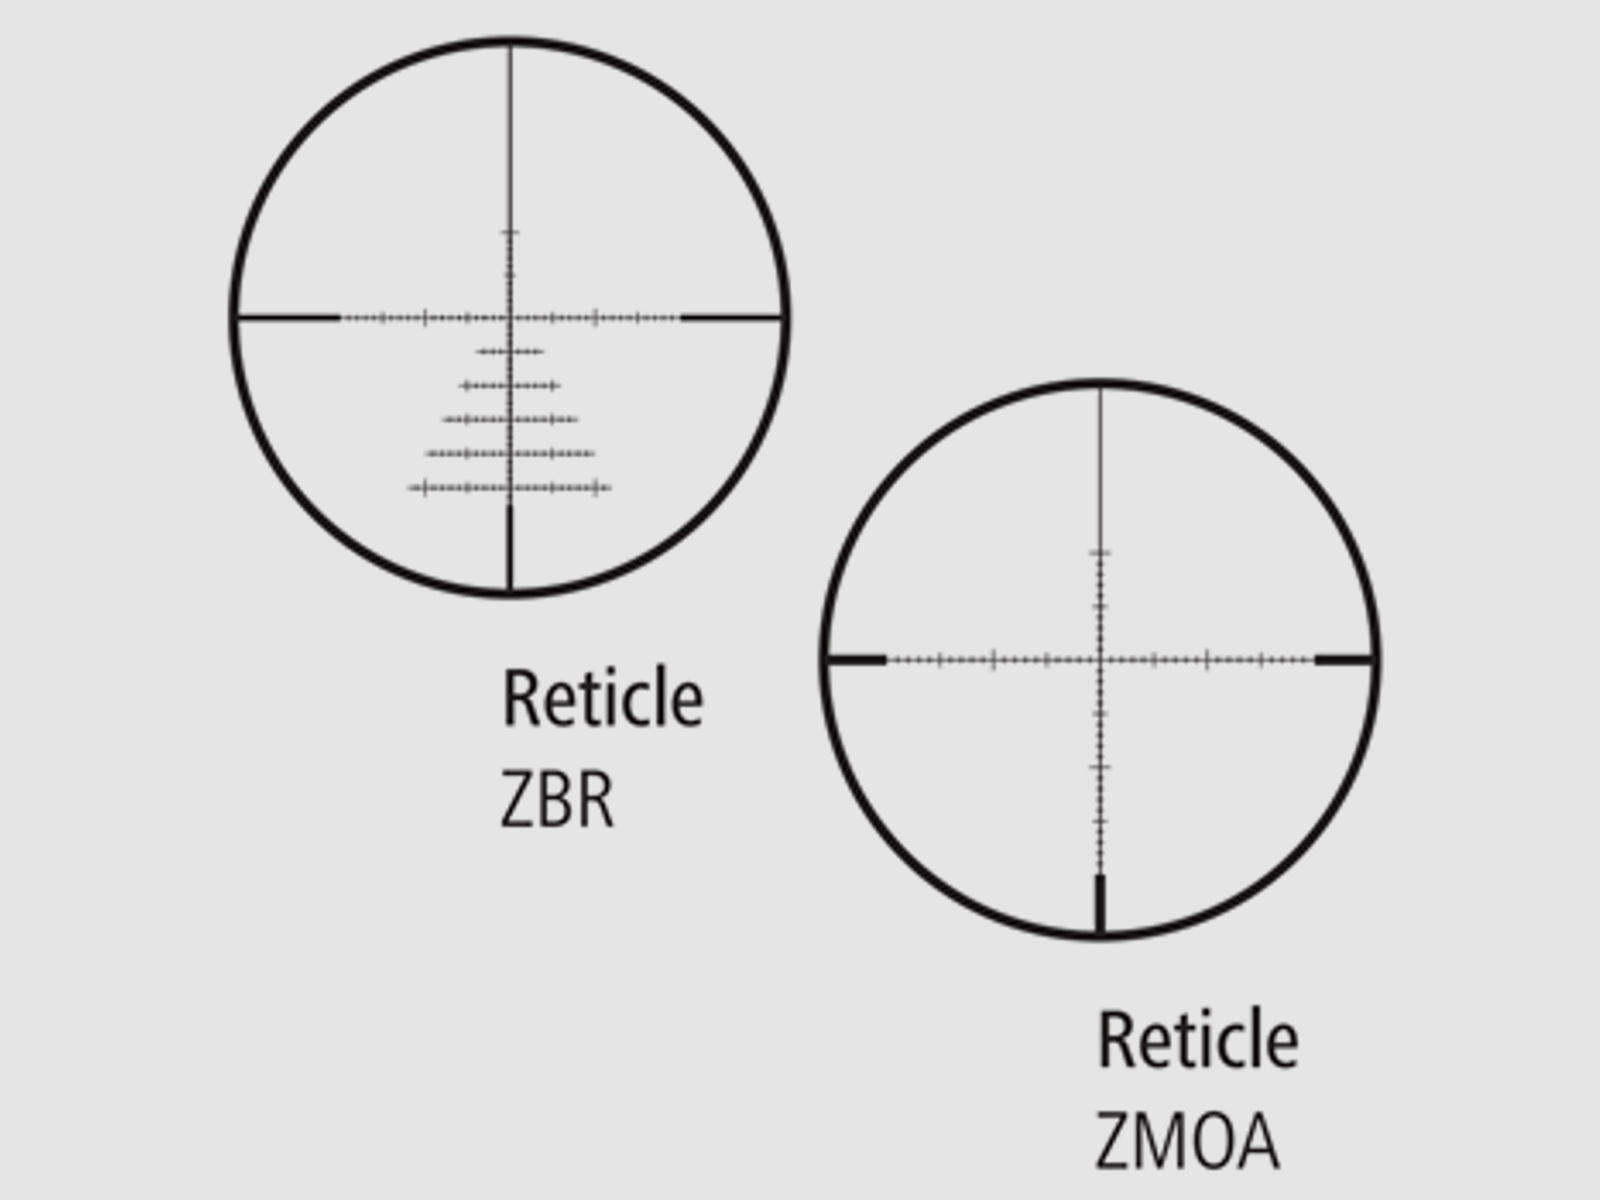 ZEISS Zielfernrohr mit Leuchtabsehen 6-24x50 Conquest V4 (30mm) Abs. ZMOAi-1 ASV Höhe